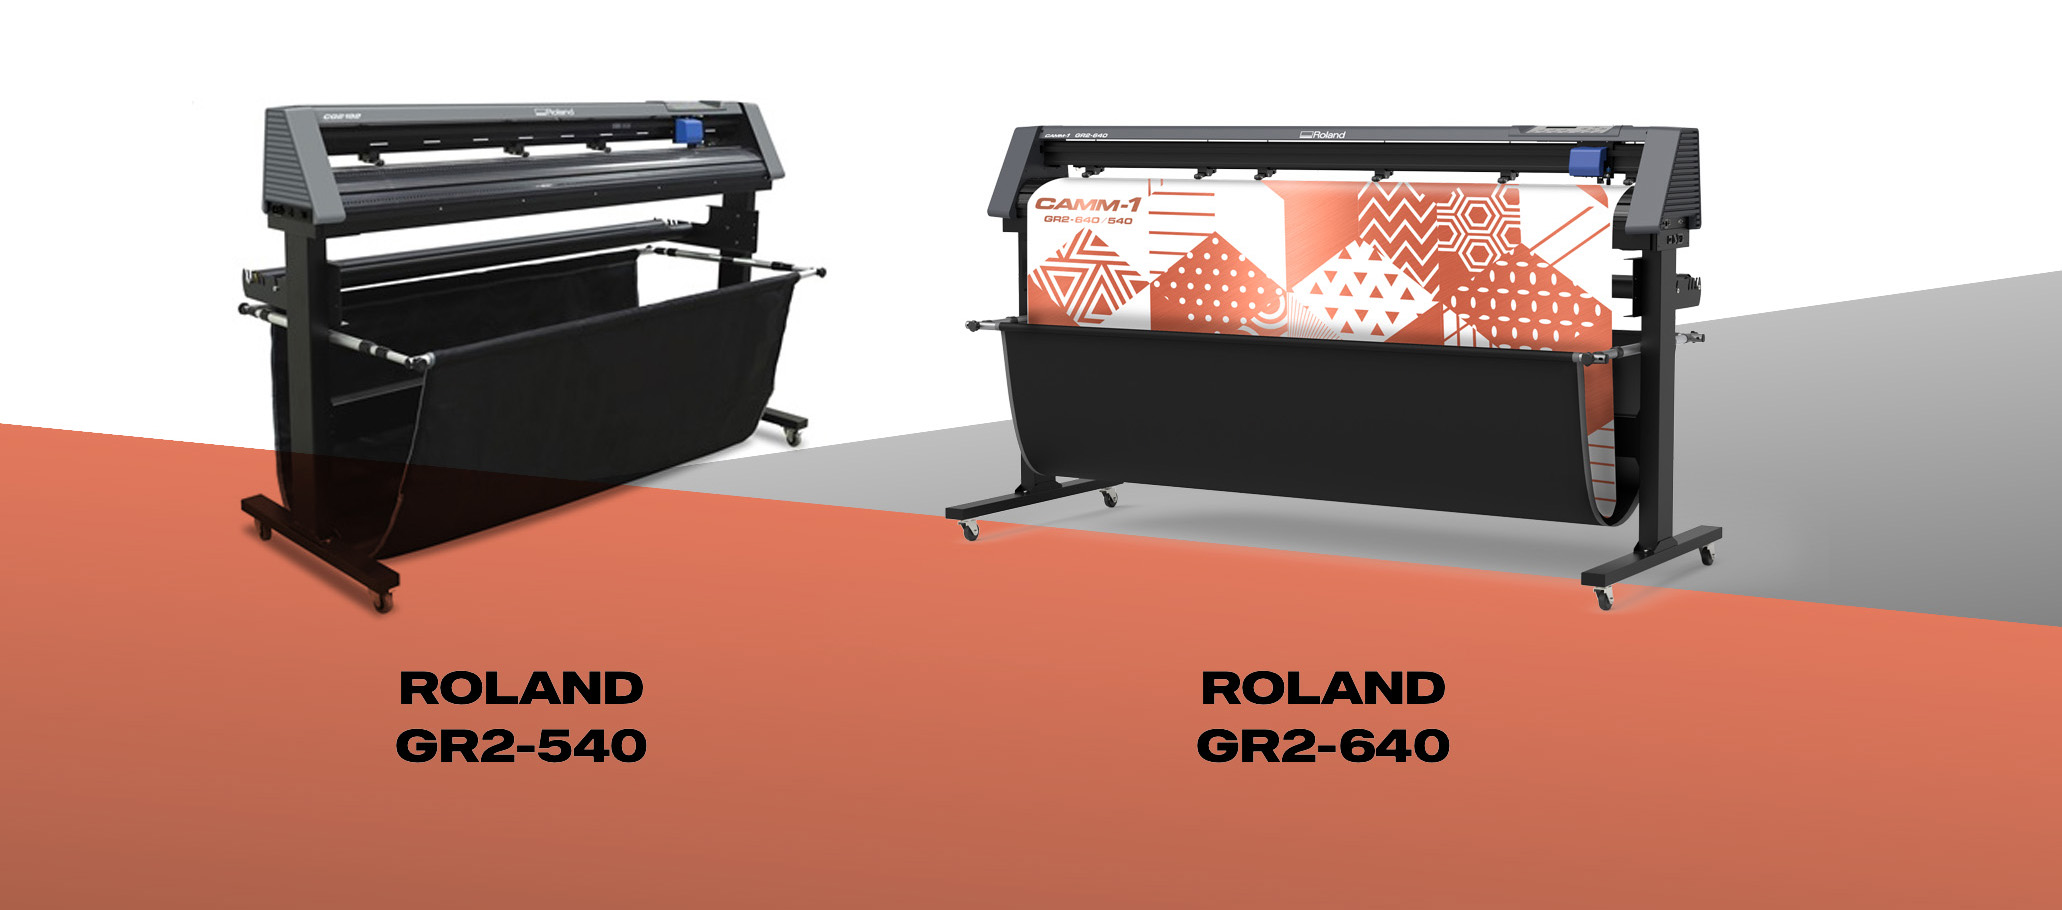 Roland GR2 Series